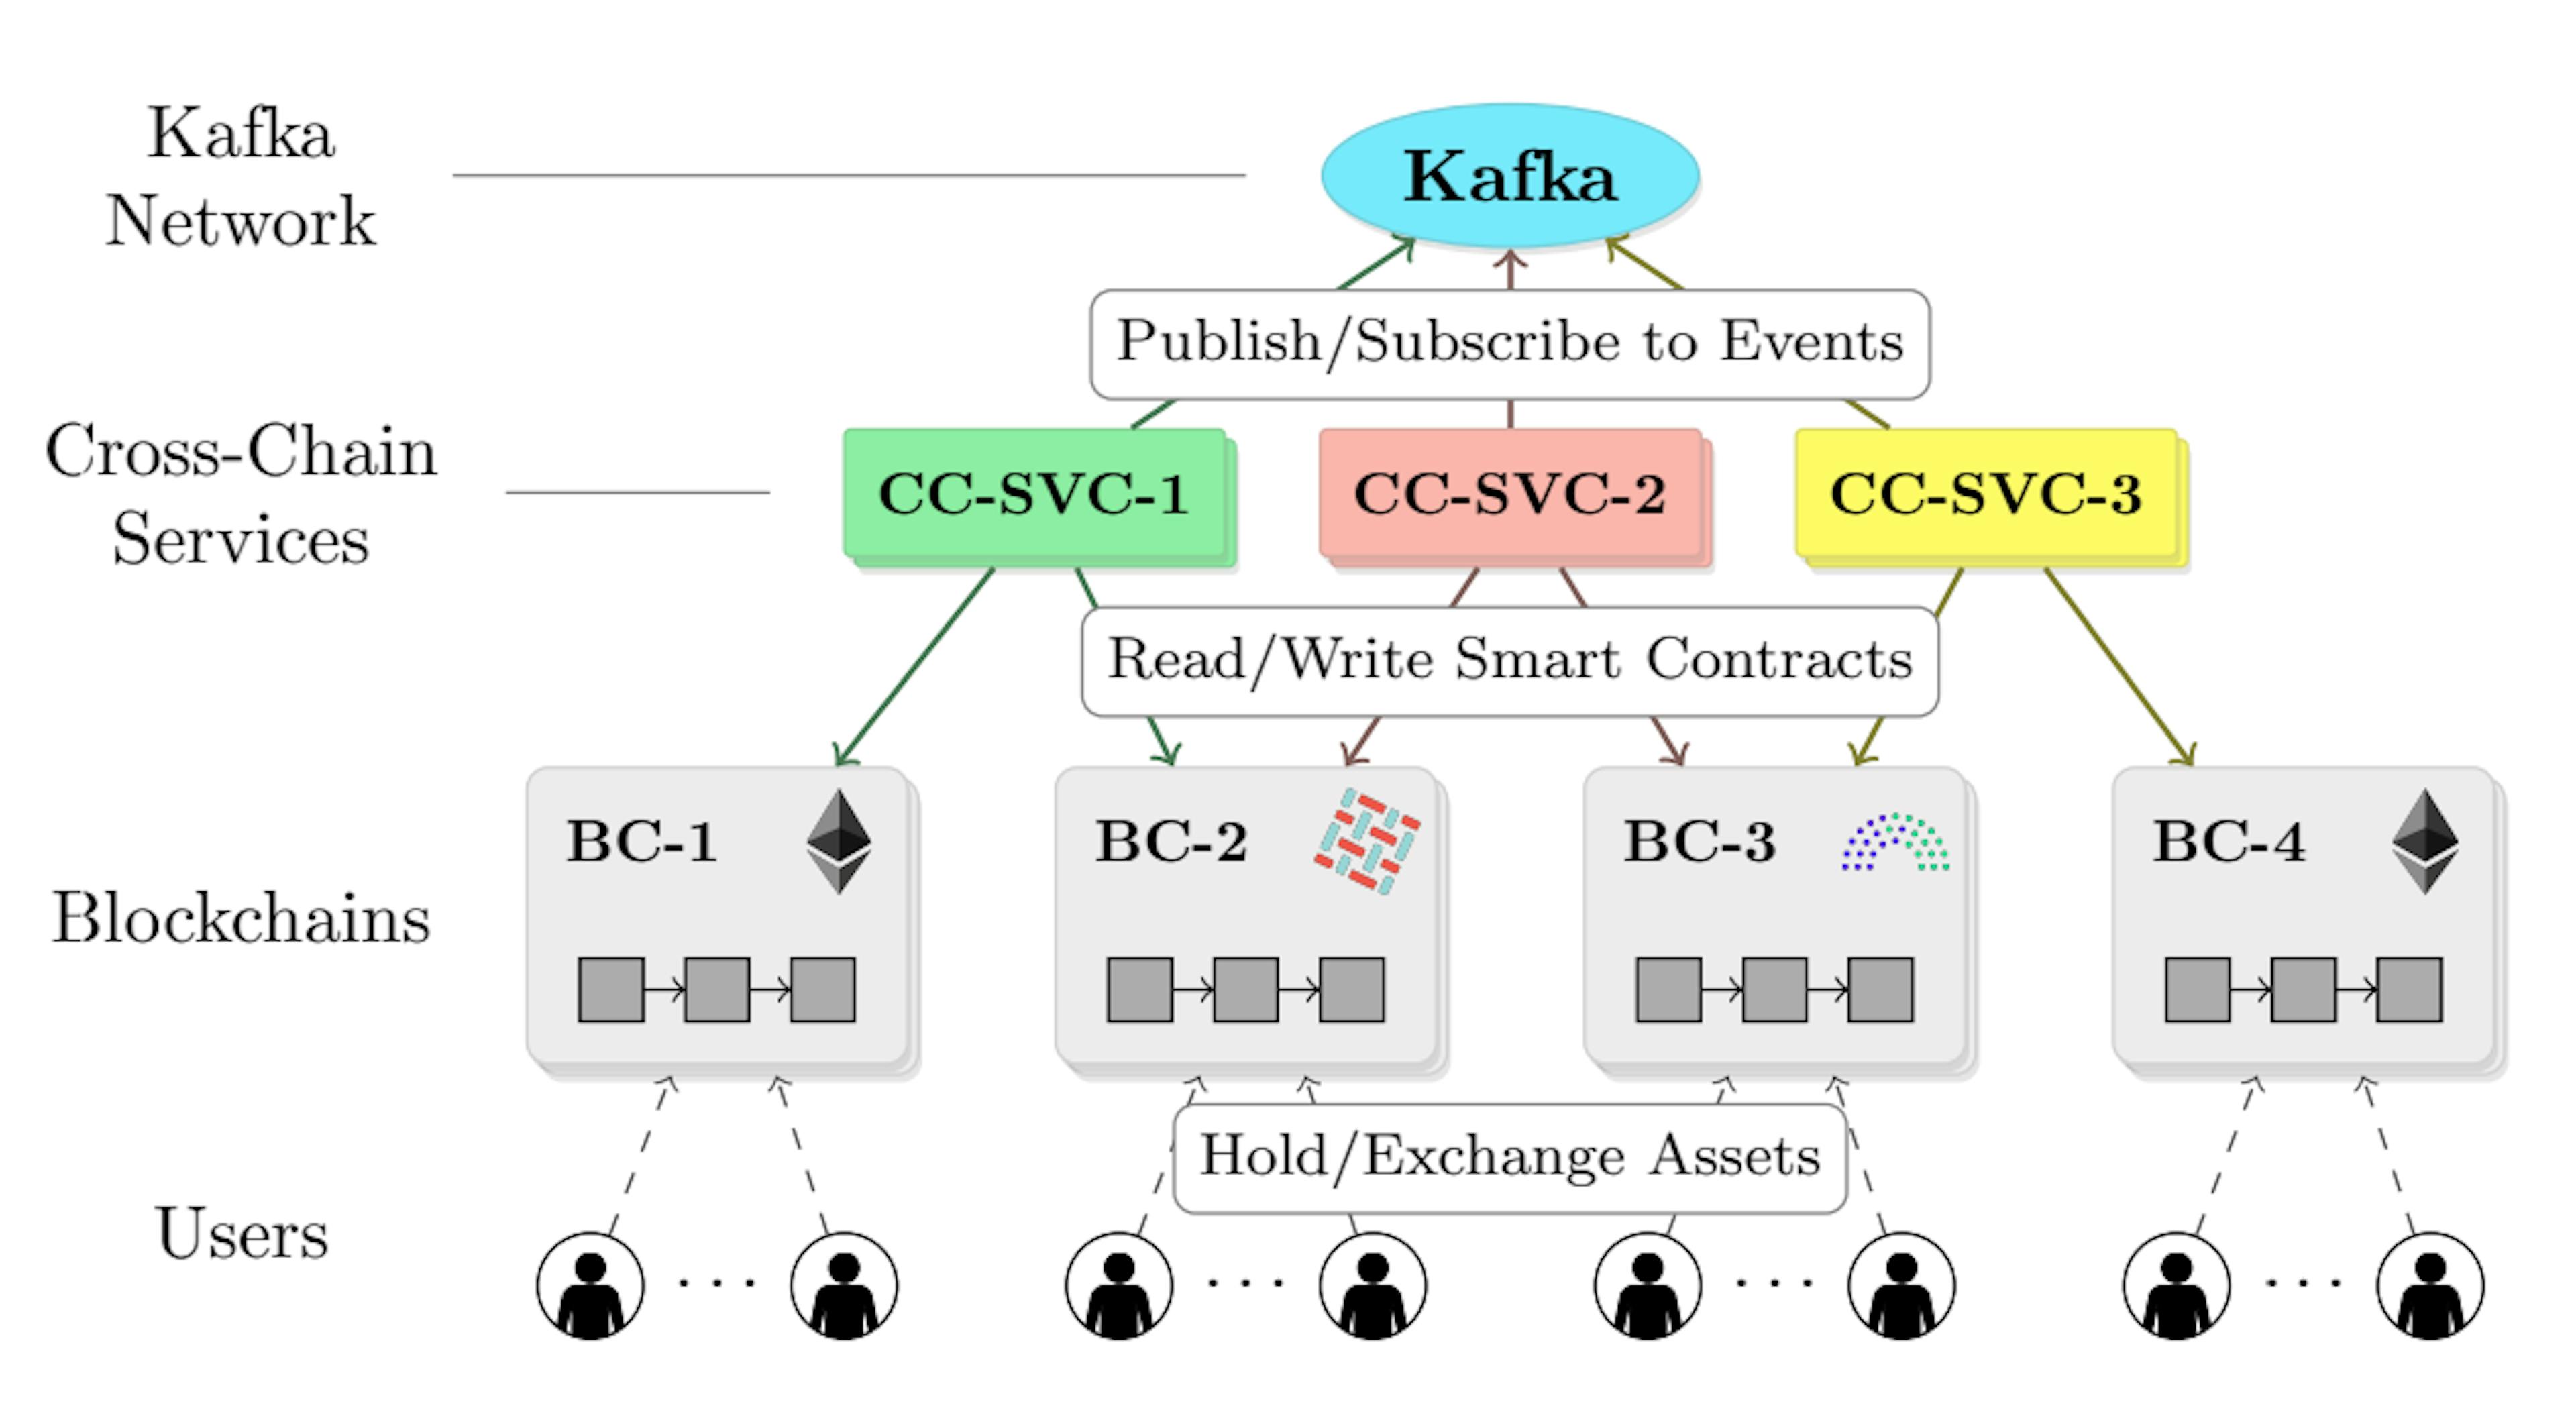 图 1. PIECHAIN 架构：跨链服务（CC-SVC）从 Kafka 网络读取/写入事件，并与不同的底层区块链（BC）交互。